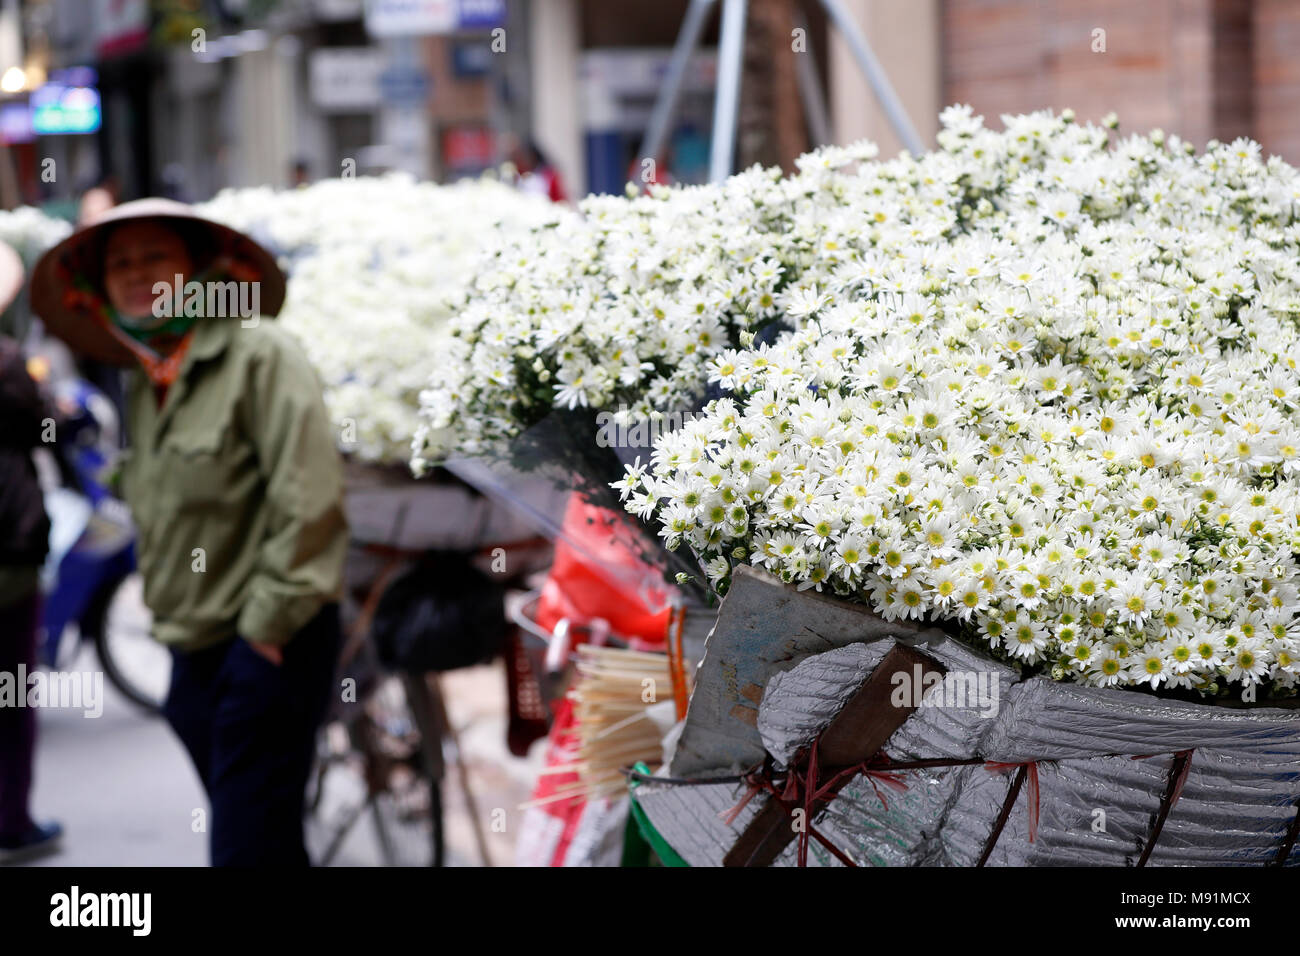 Vendeur vente de fleurs à partir de son mobile magasin de bicyclettes. Hanoi. Le Vietnam. Banque D'Images